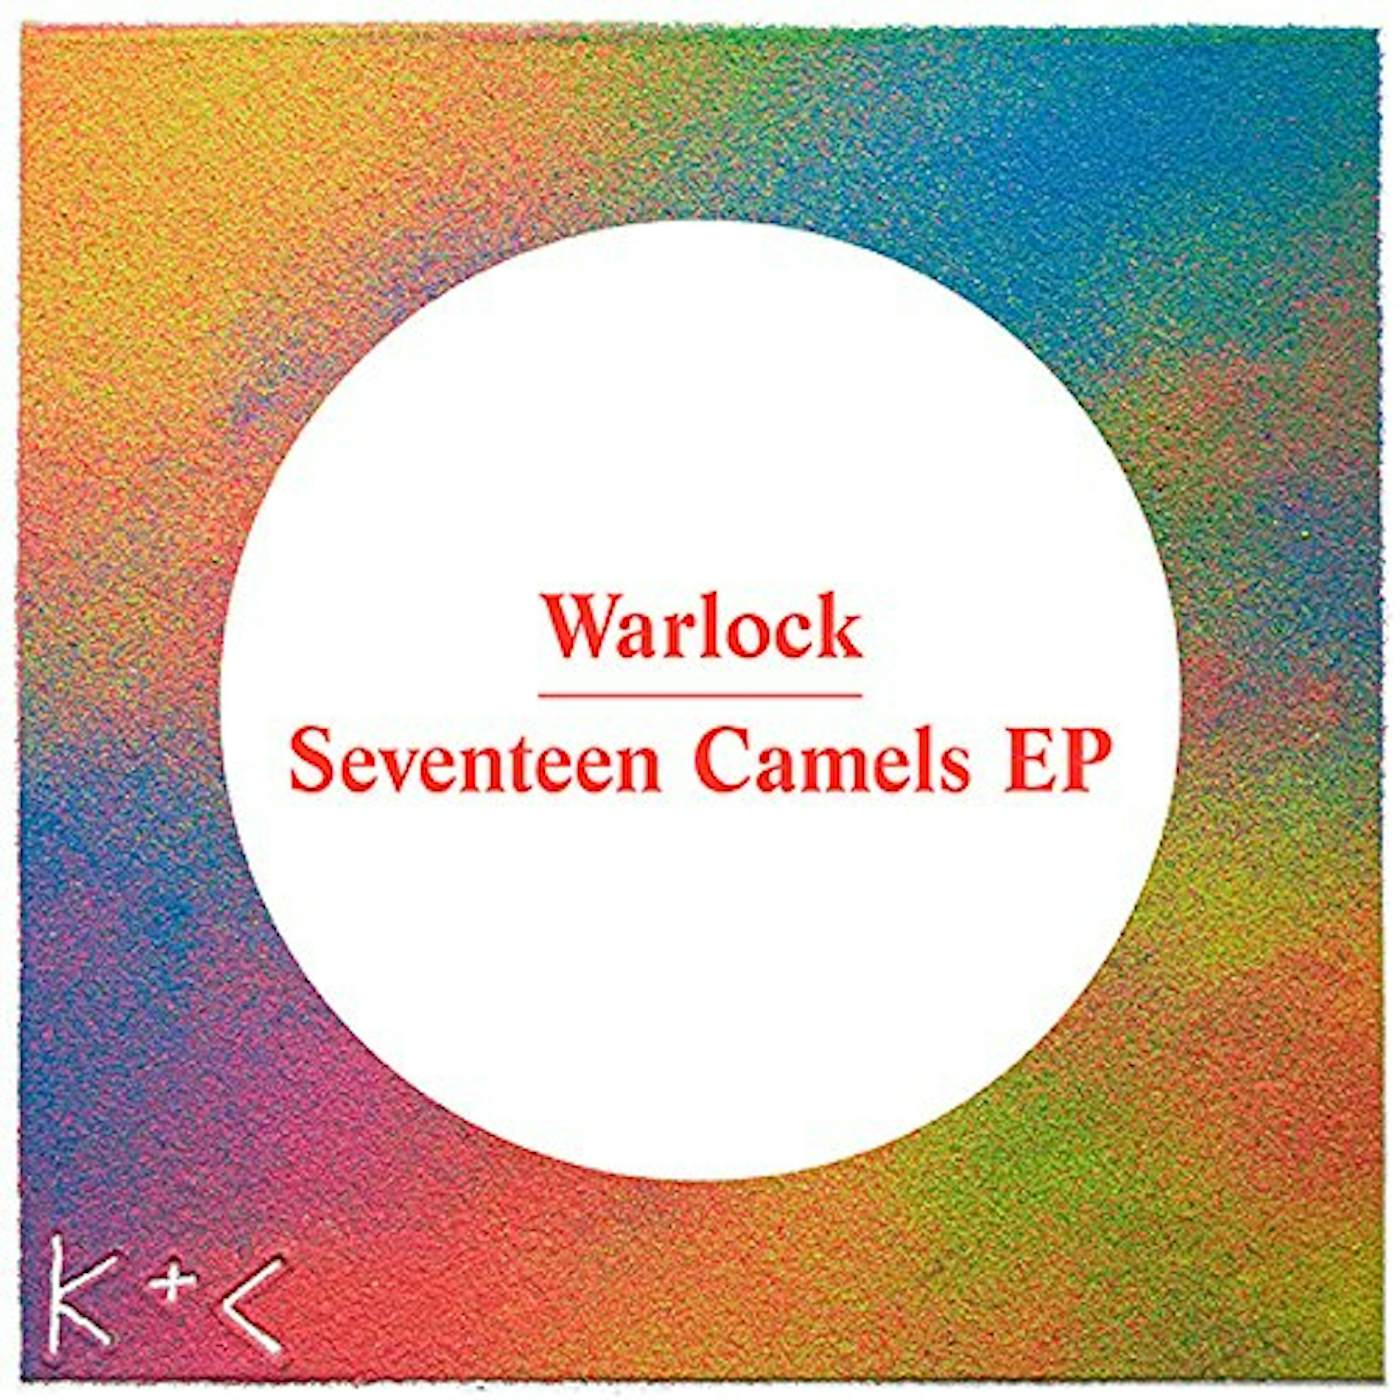 Warlock SEVENTEEN CAMELS Vinyl Record